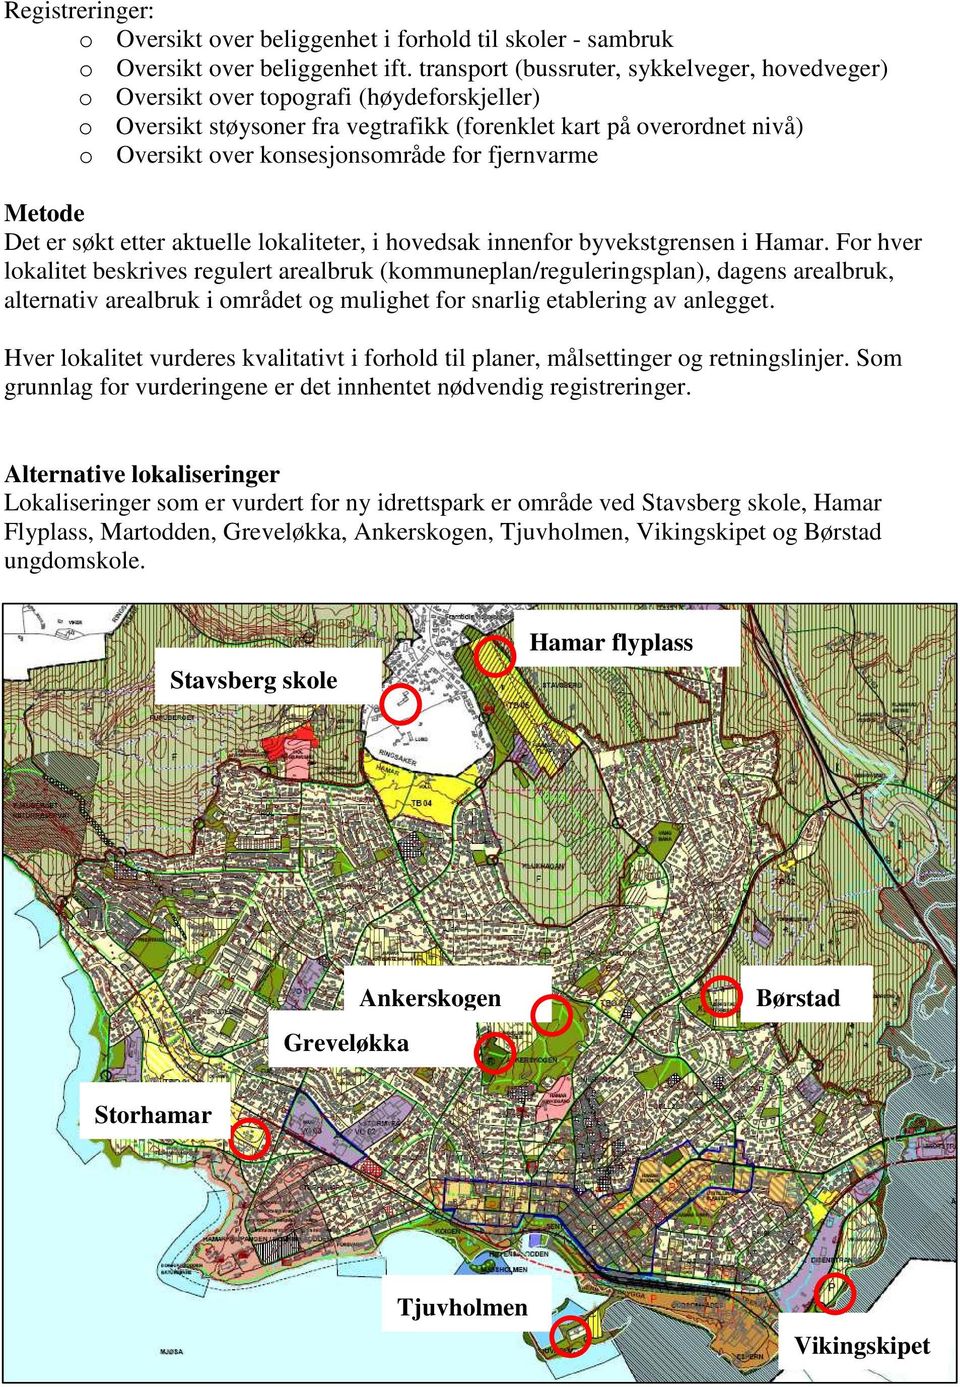 for fjernvarme Metode Det er søkt etter aktuelle lokaliteter, i hovedsak innenfor byvekstgrensen i Hamar.